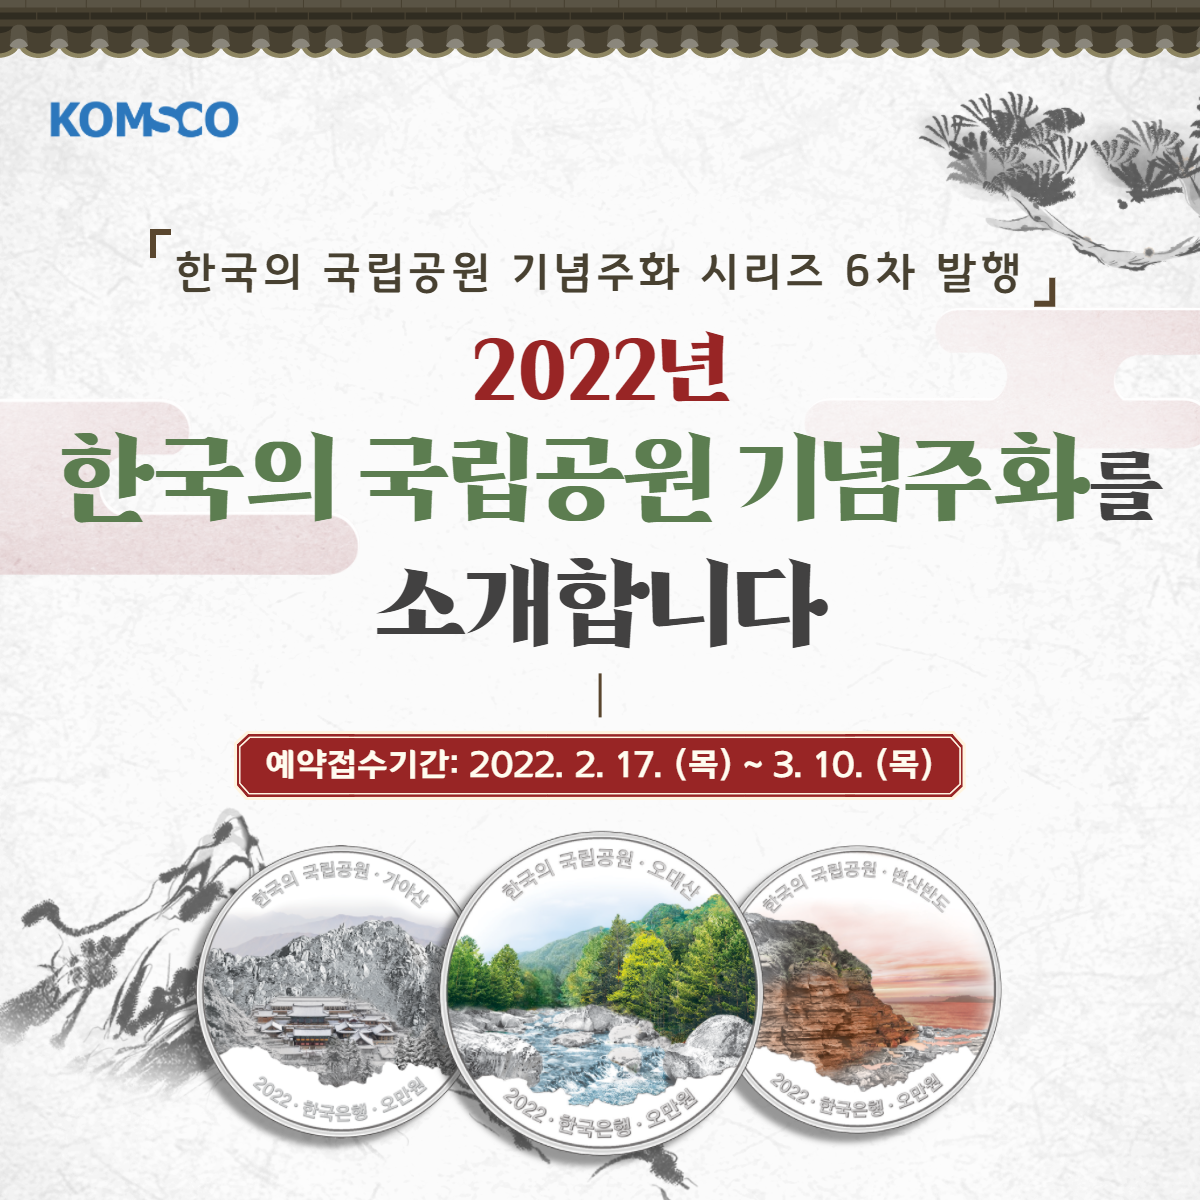 한국의 국립공원 기념주화 시리즈 6차 발행. 2022년 한국의 국립공원 기념주화를 소개합니다. 예약접수기간 : 2022.2.17.(목) ~ 3.10.(목)